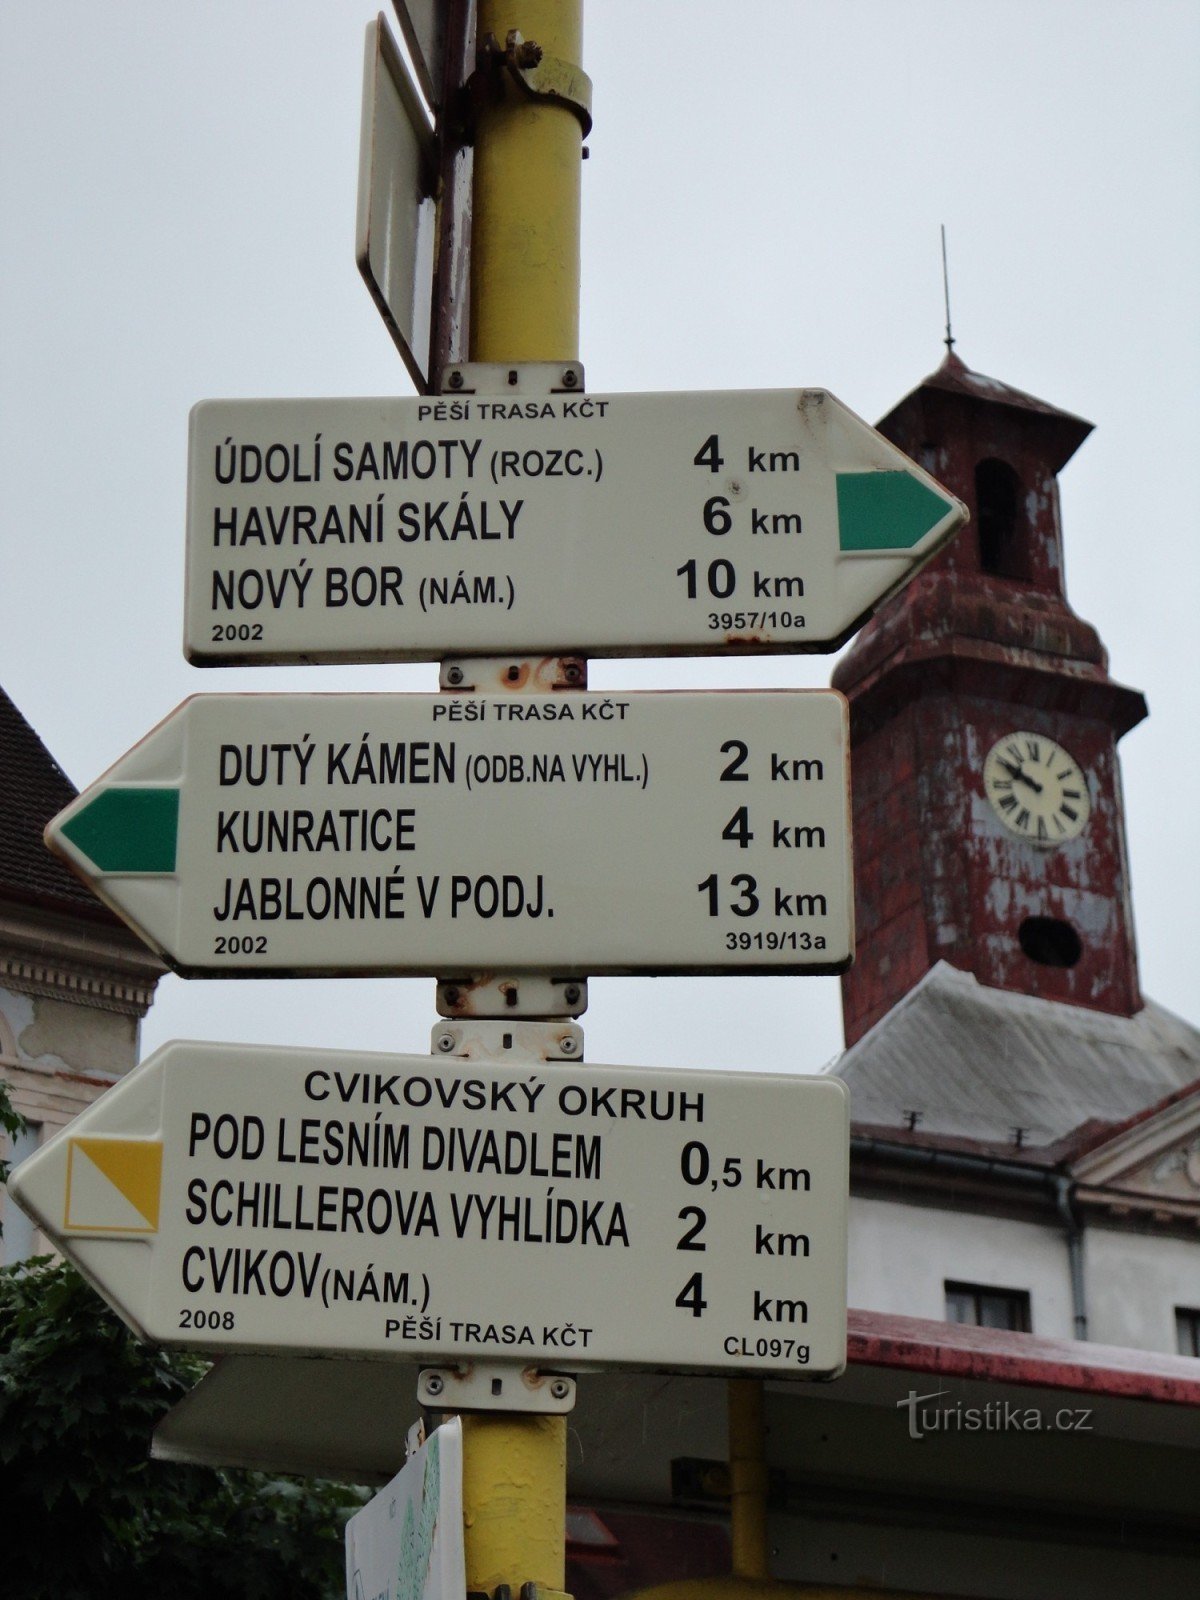 旅游十字路口 Cvikov - náměstí